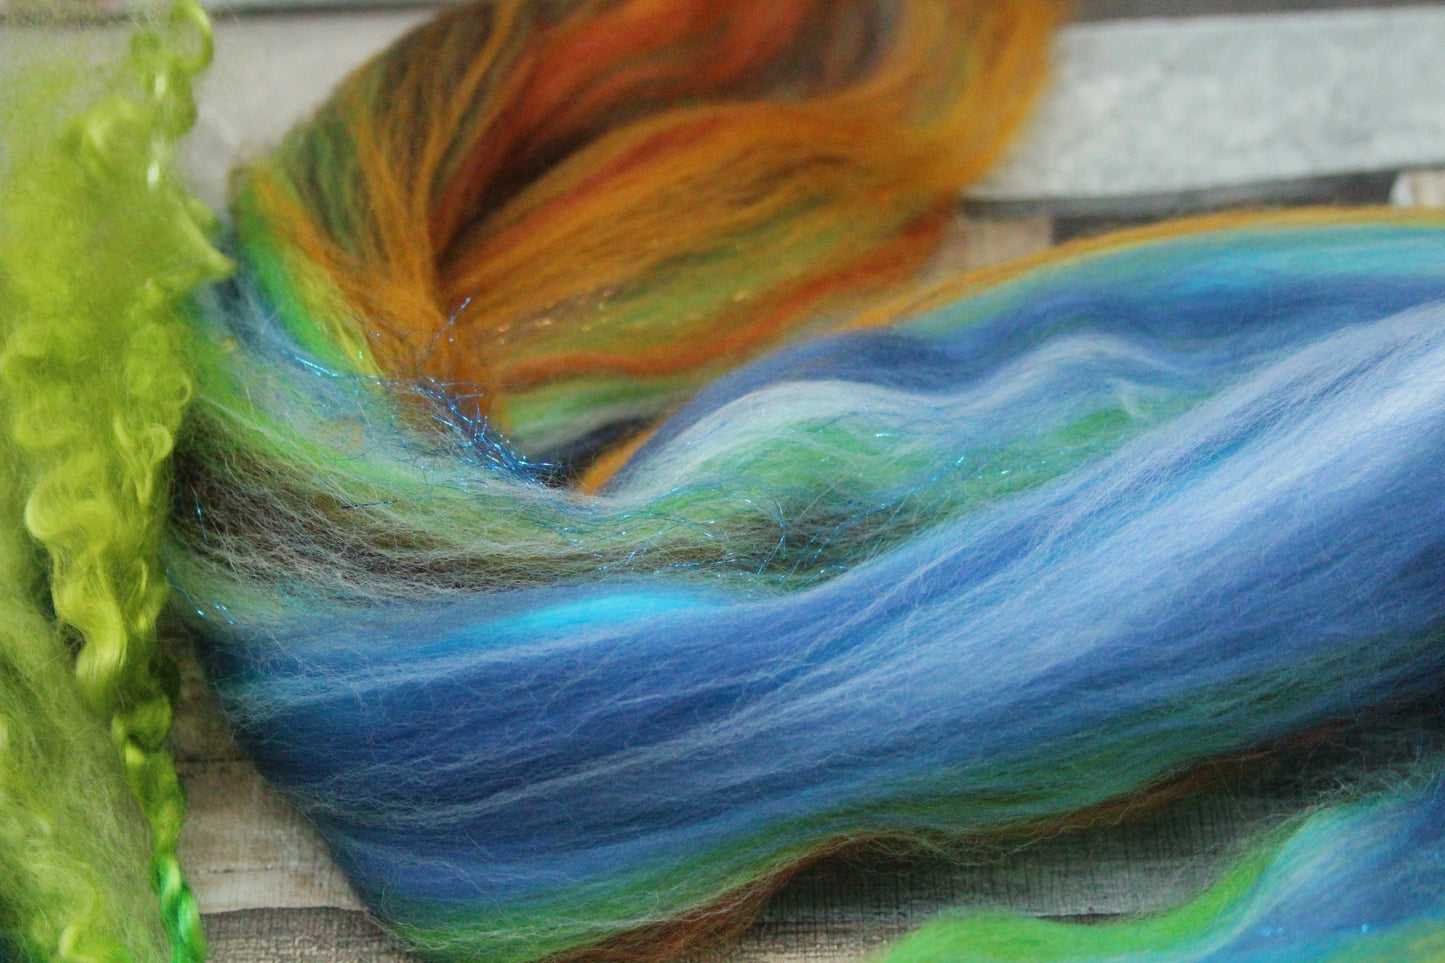 Merino Wool Blend - Brown Green Blue - 18 grams / 0.6 oz  - Fibre for felting, weaving or spinning